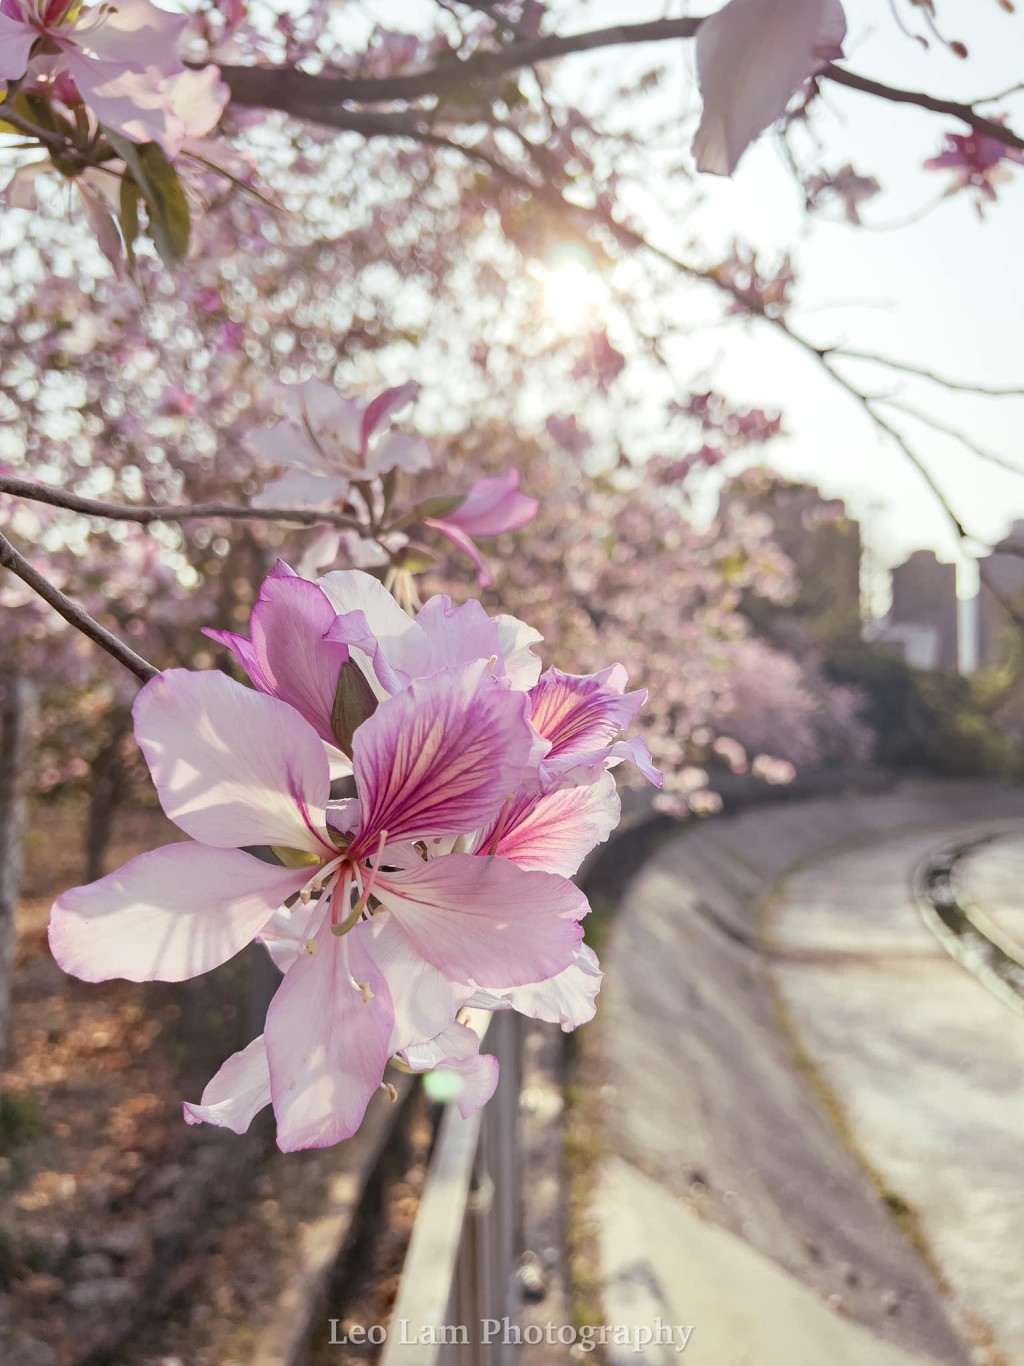 网民指“香港的宫粉不输日本的樱花”。图片授权Leo Lam